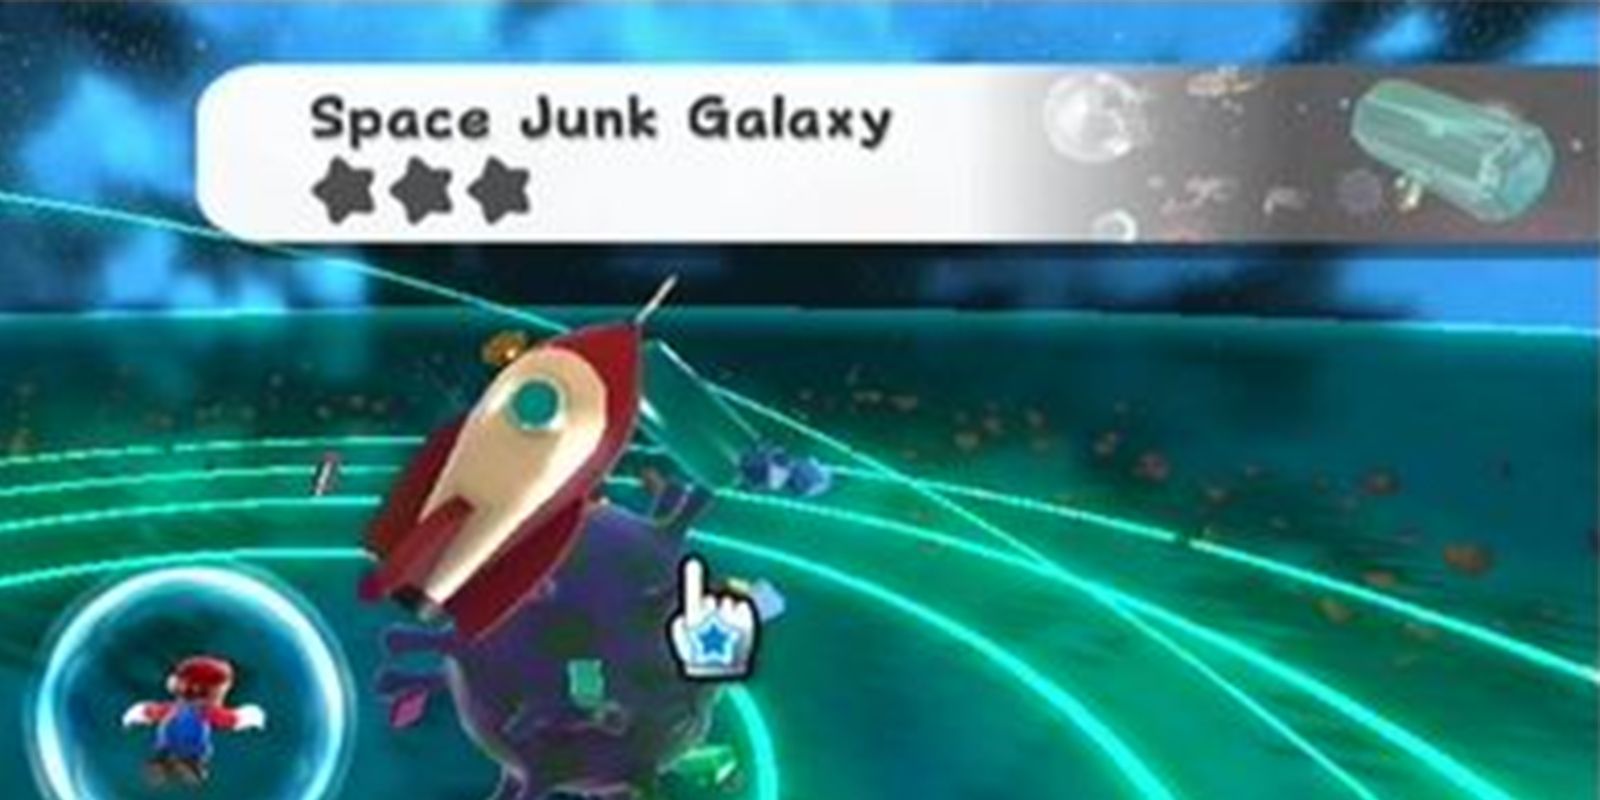 Space Junk Galaxy in Super Mario Galaxy 2